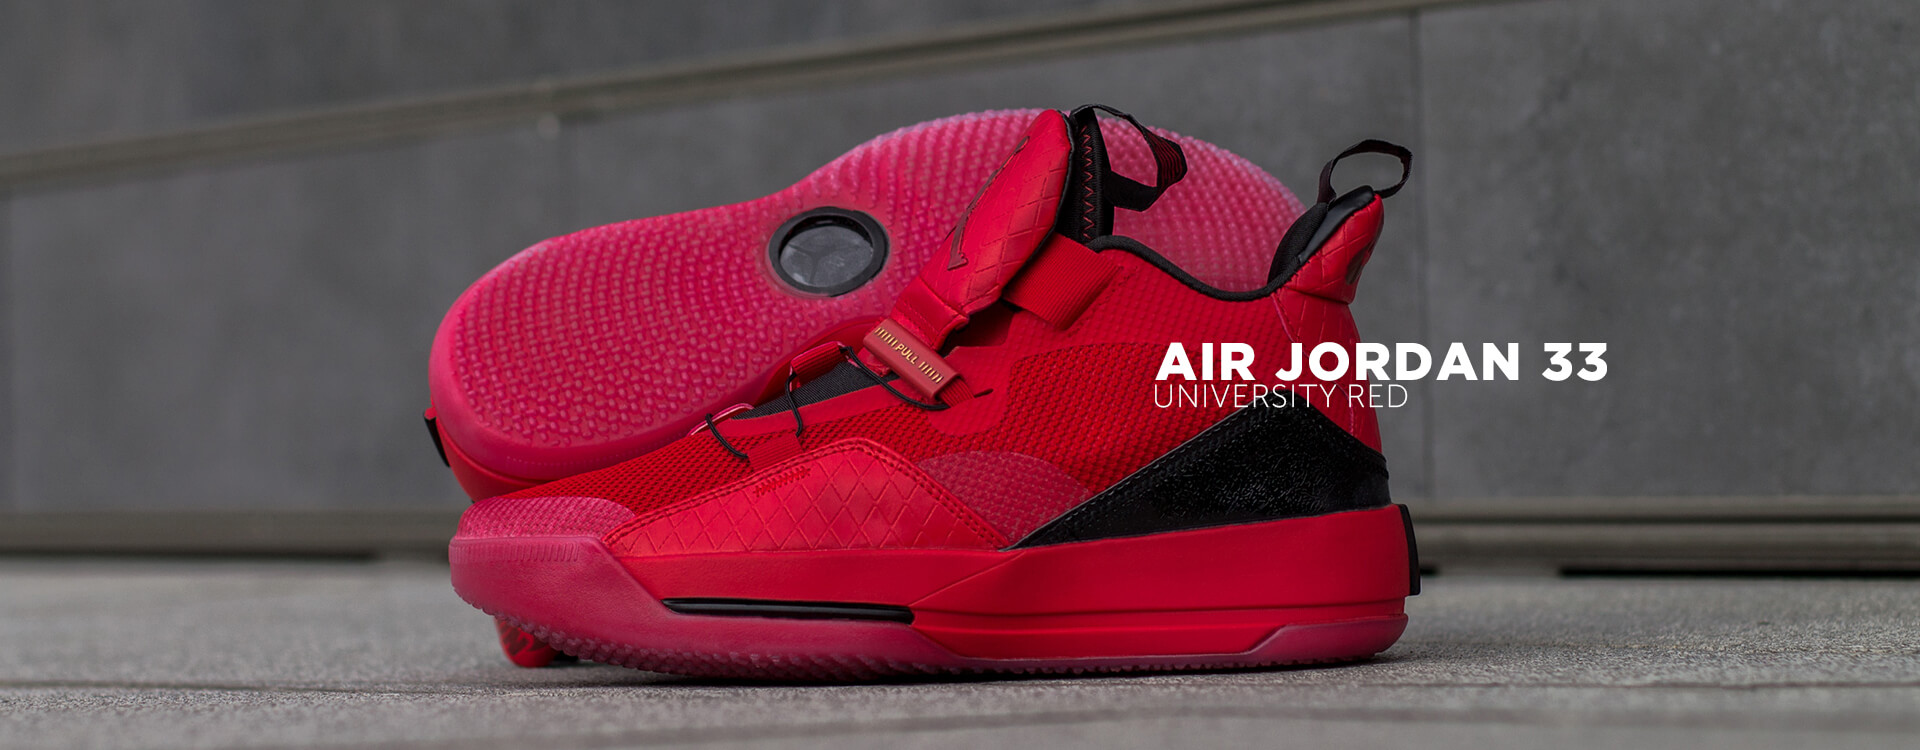 Air Jordan 33 